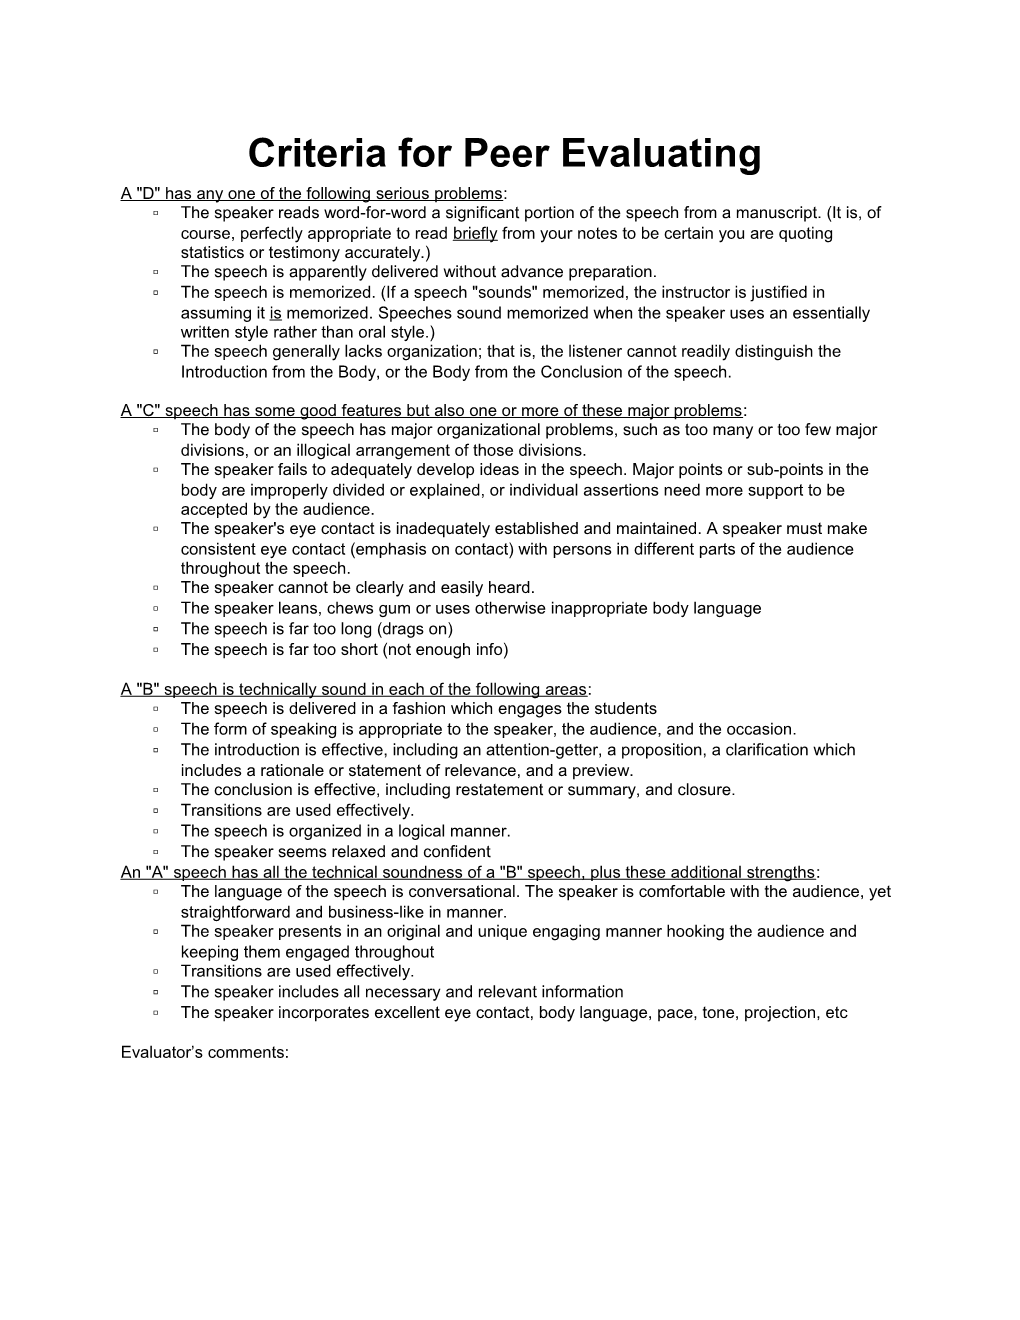 Criteria for Peer Evaluating